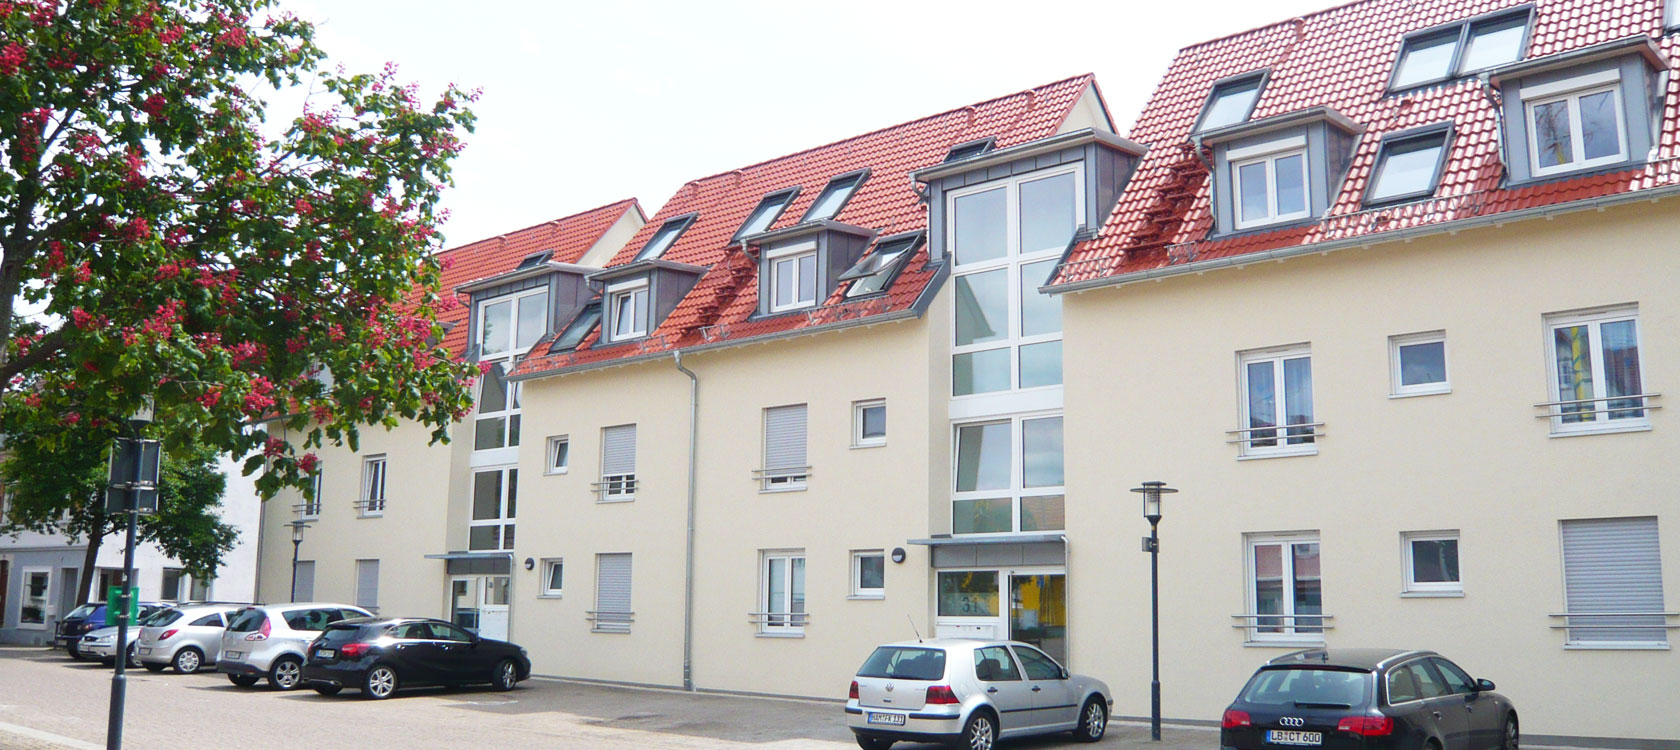 Mehrfamilienhaus Hahnenstra e in Ludwigsburg Eglosheim  Sch ner Wohnen  